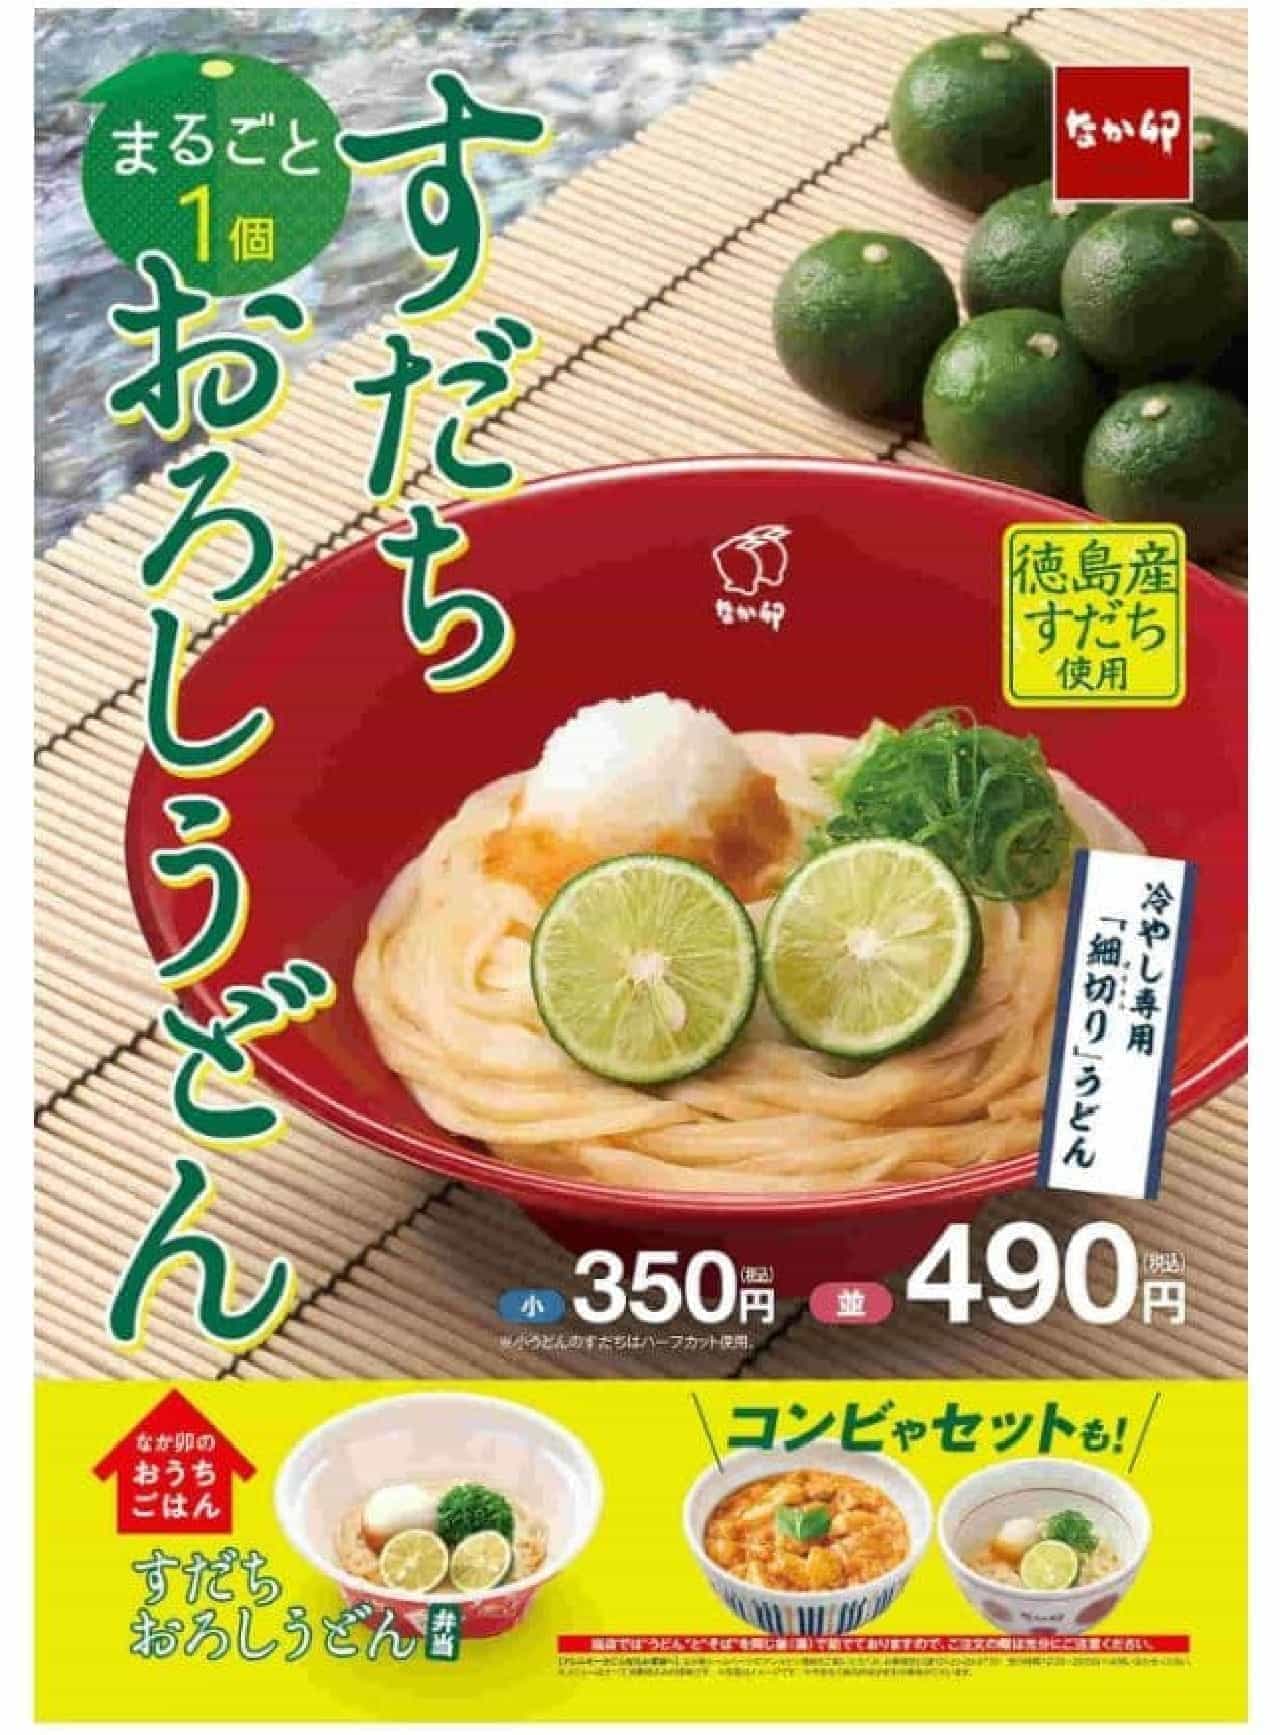 Nakau "Sudachi Oroshi Udon" (udon noodles with grated radish)